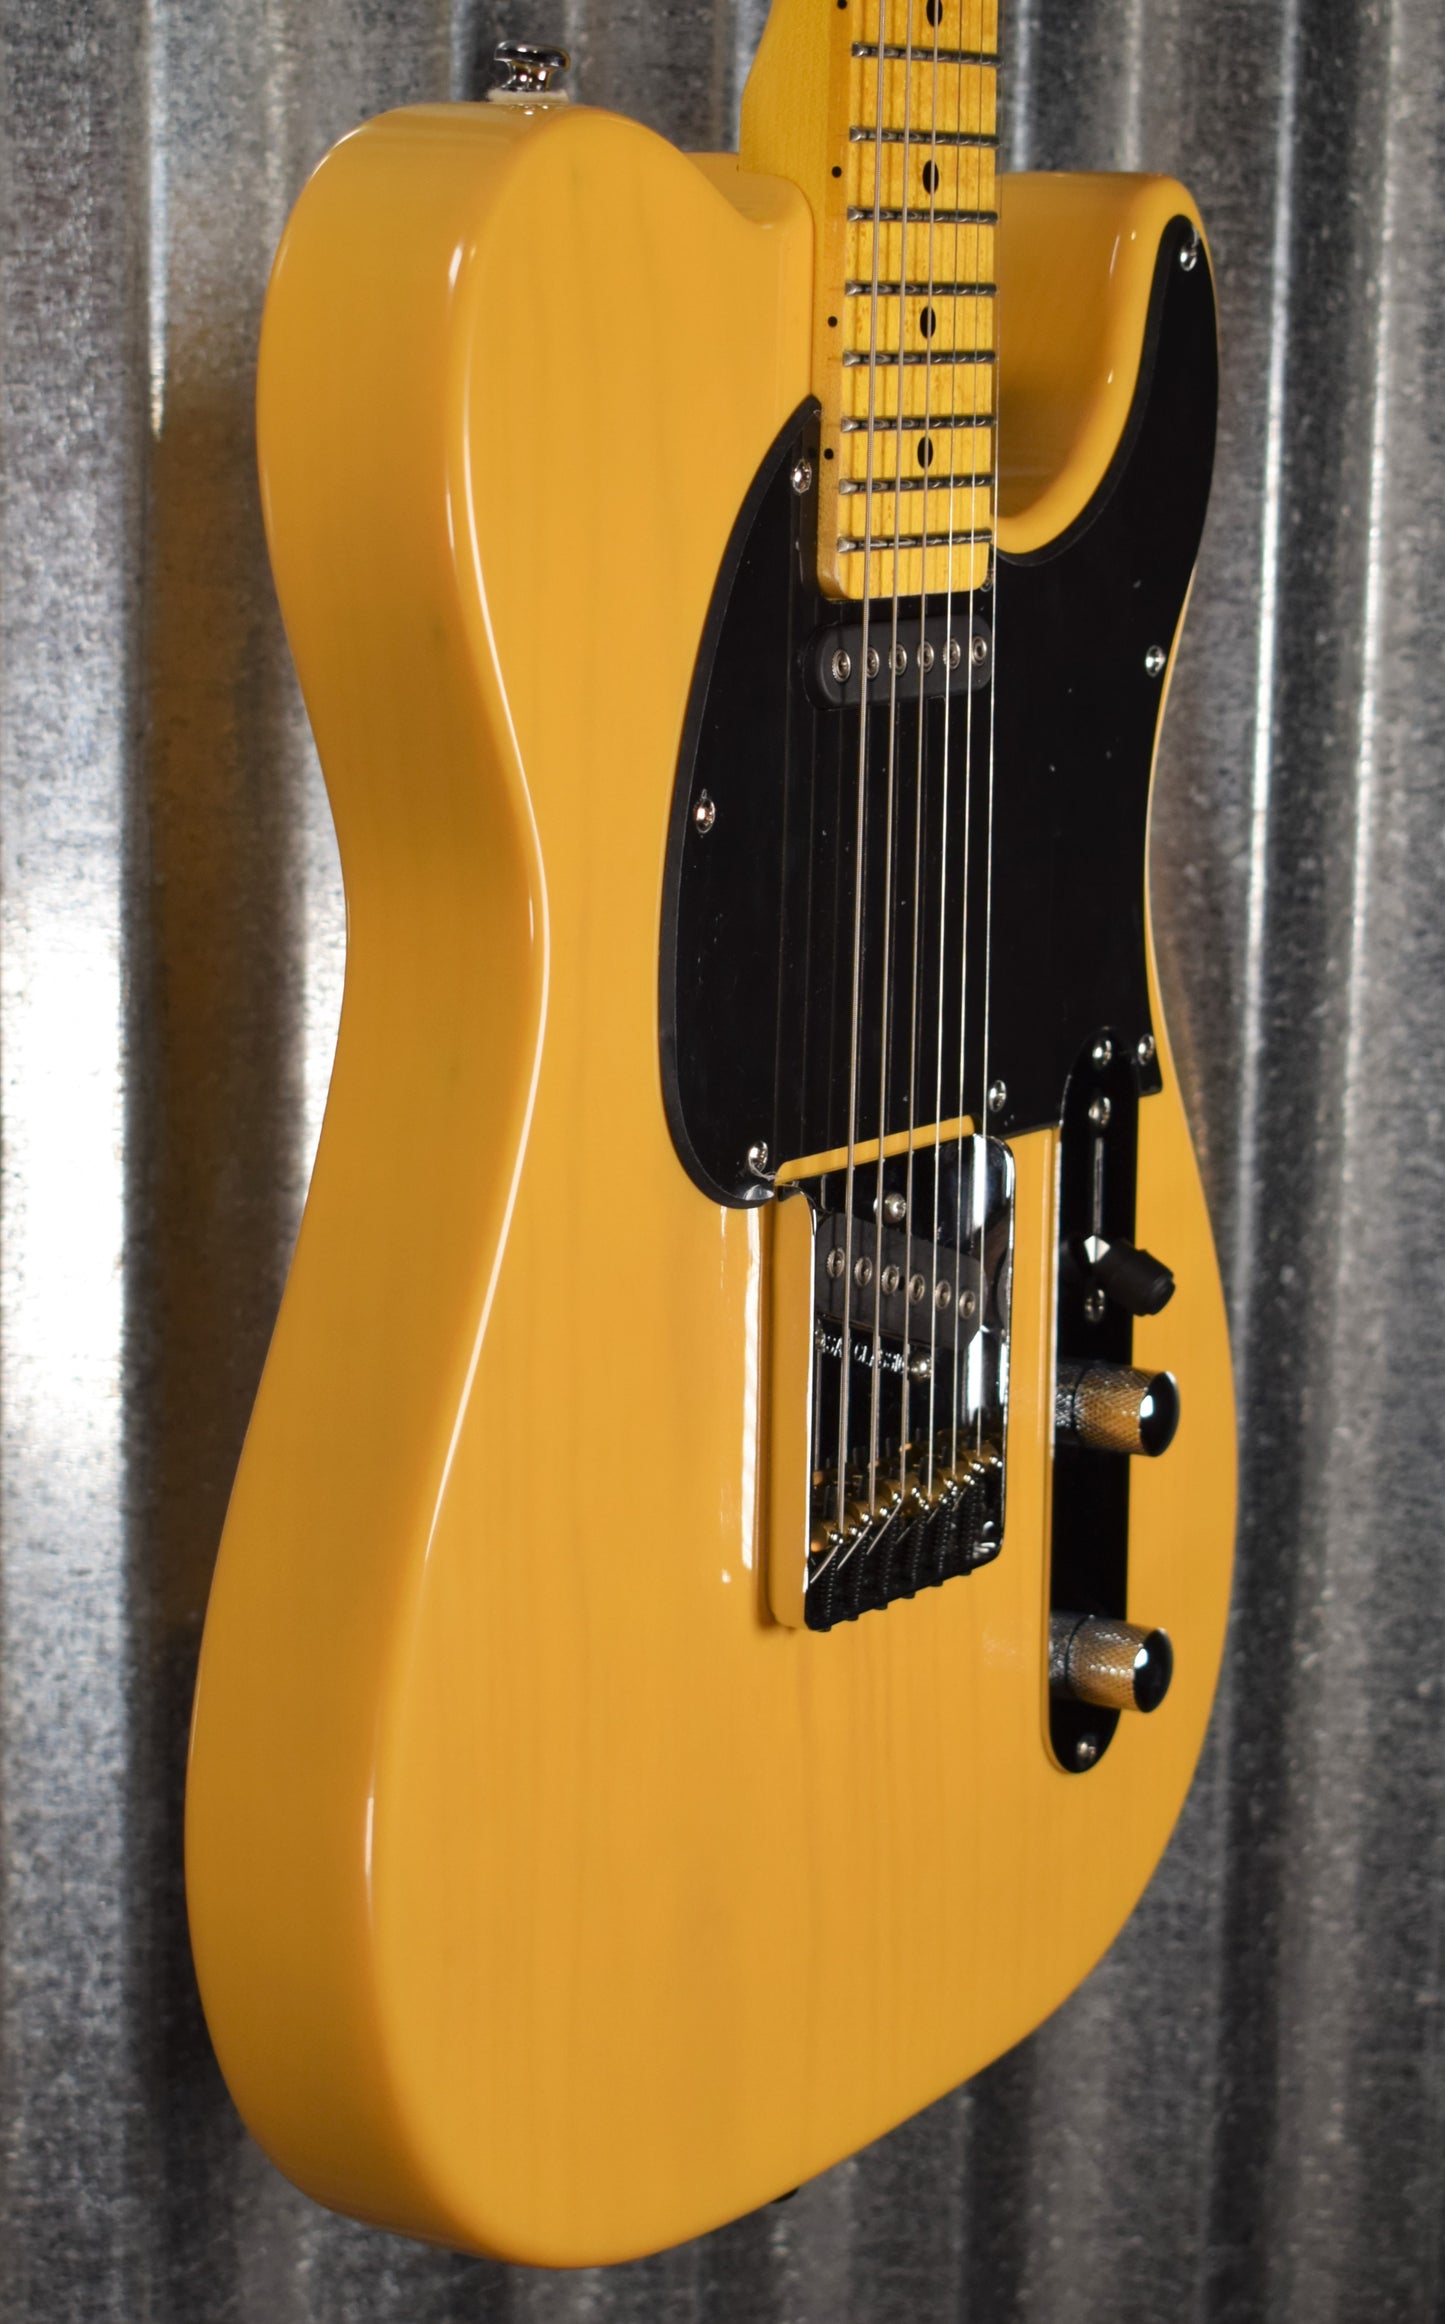 G&L Tribute ASAT Classic Butterscotch Blonde Guitar #9743 Demo